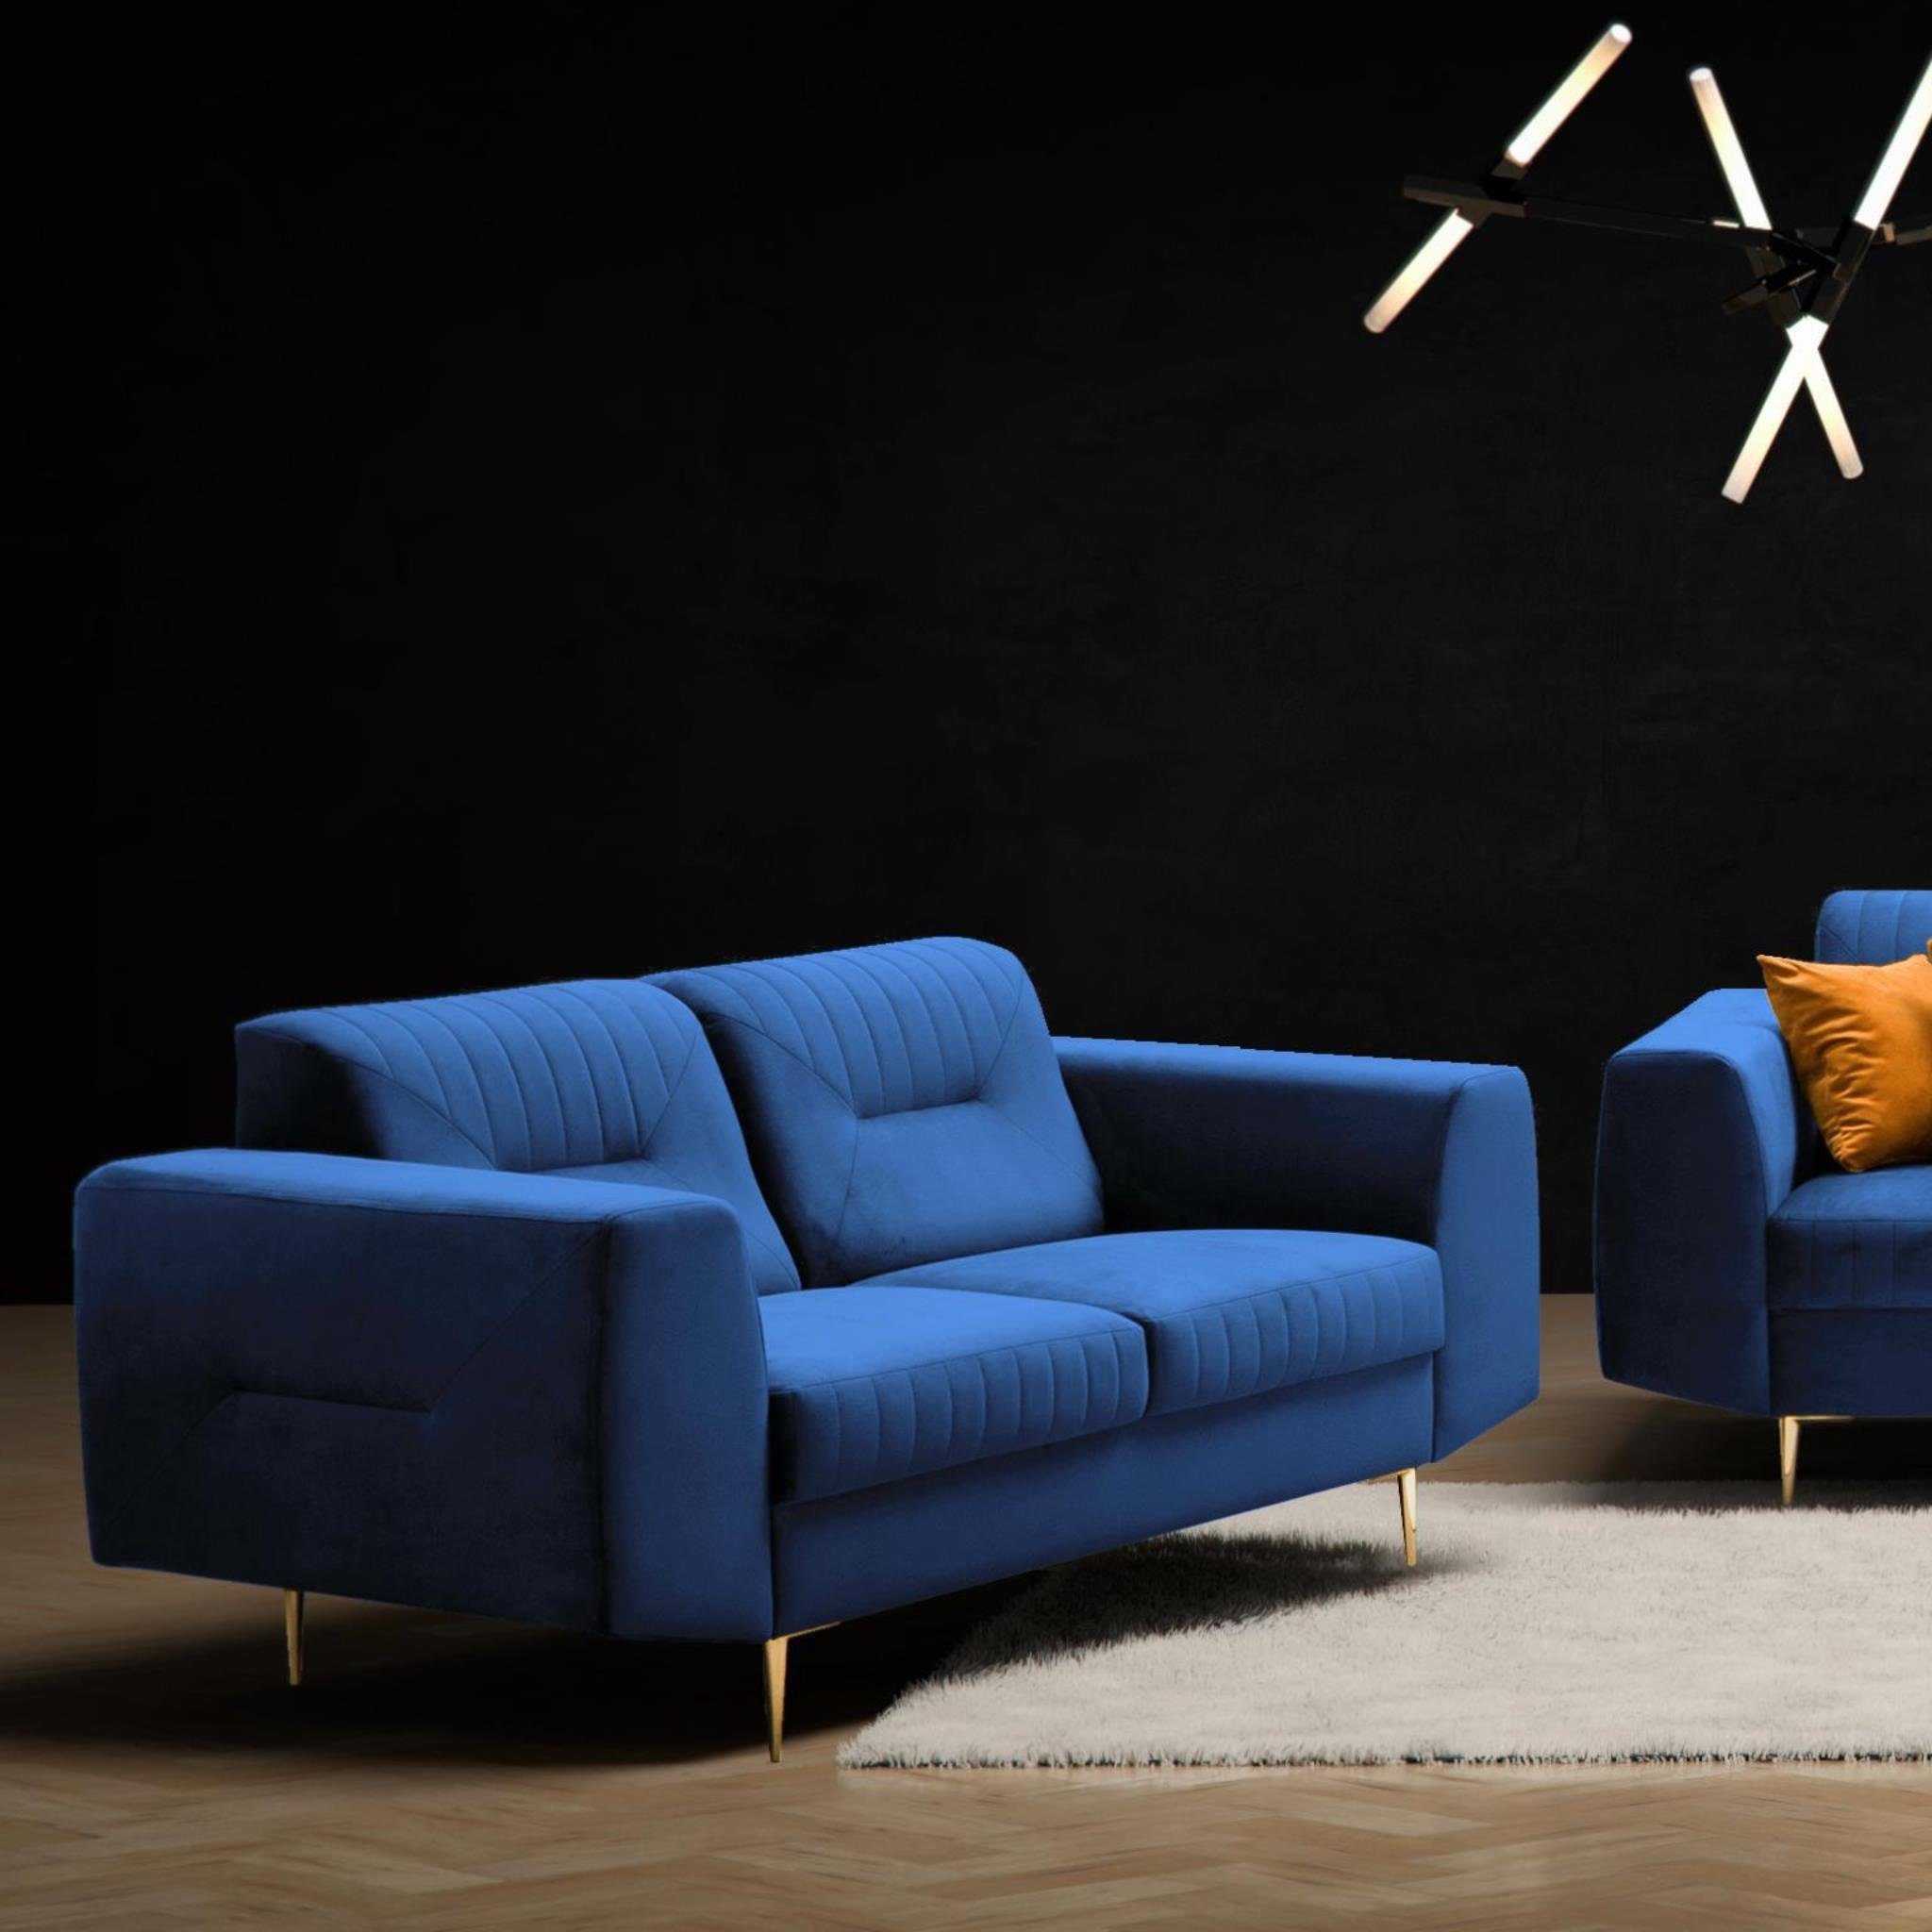 Beautysofa 2-Sitzer VENEZIA, Relaxsofa im modernes Design, mit Metallbeine, Zweisitzer Sofa aus Velours Marineblau (solo 263) | Einzelsofas